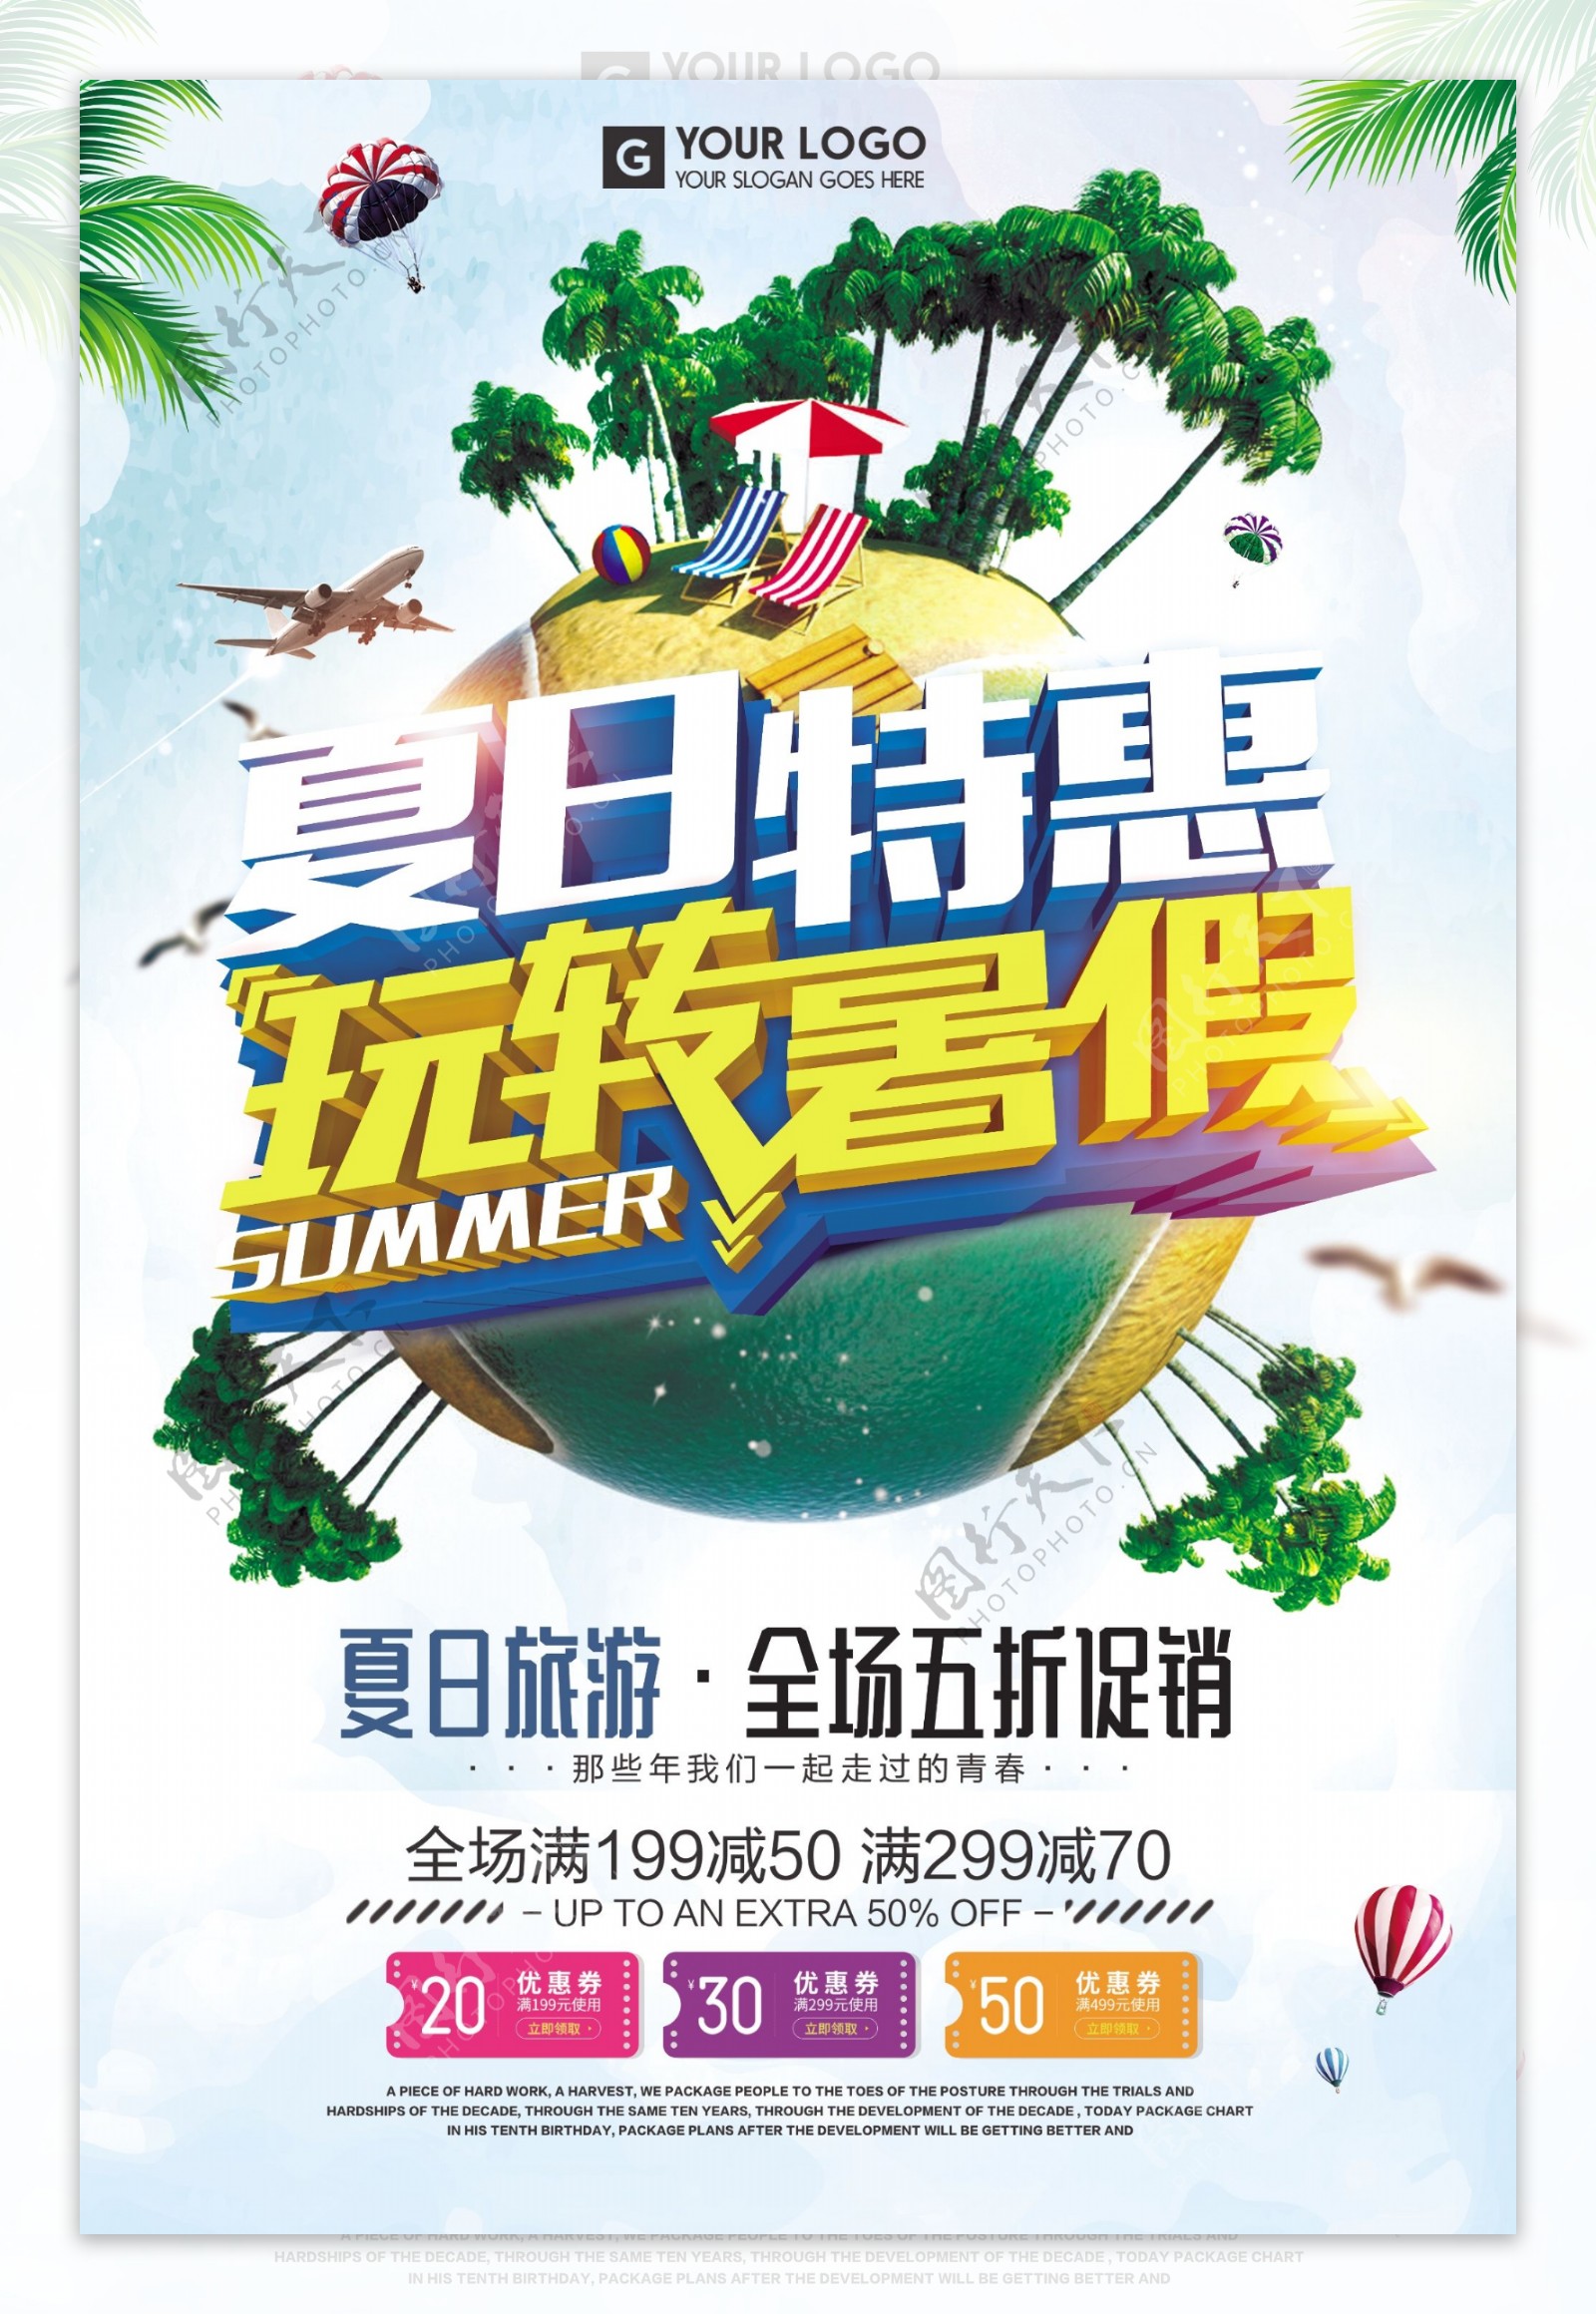 夏日旅行特惠暑假环球之旅海报设计